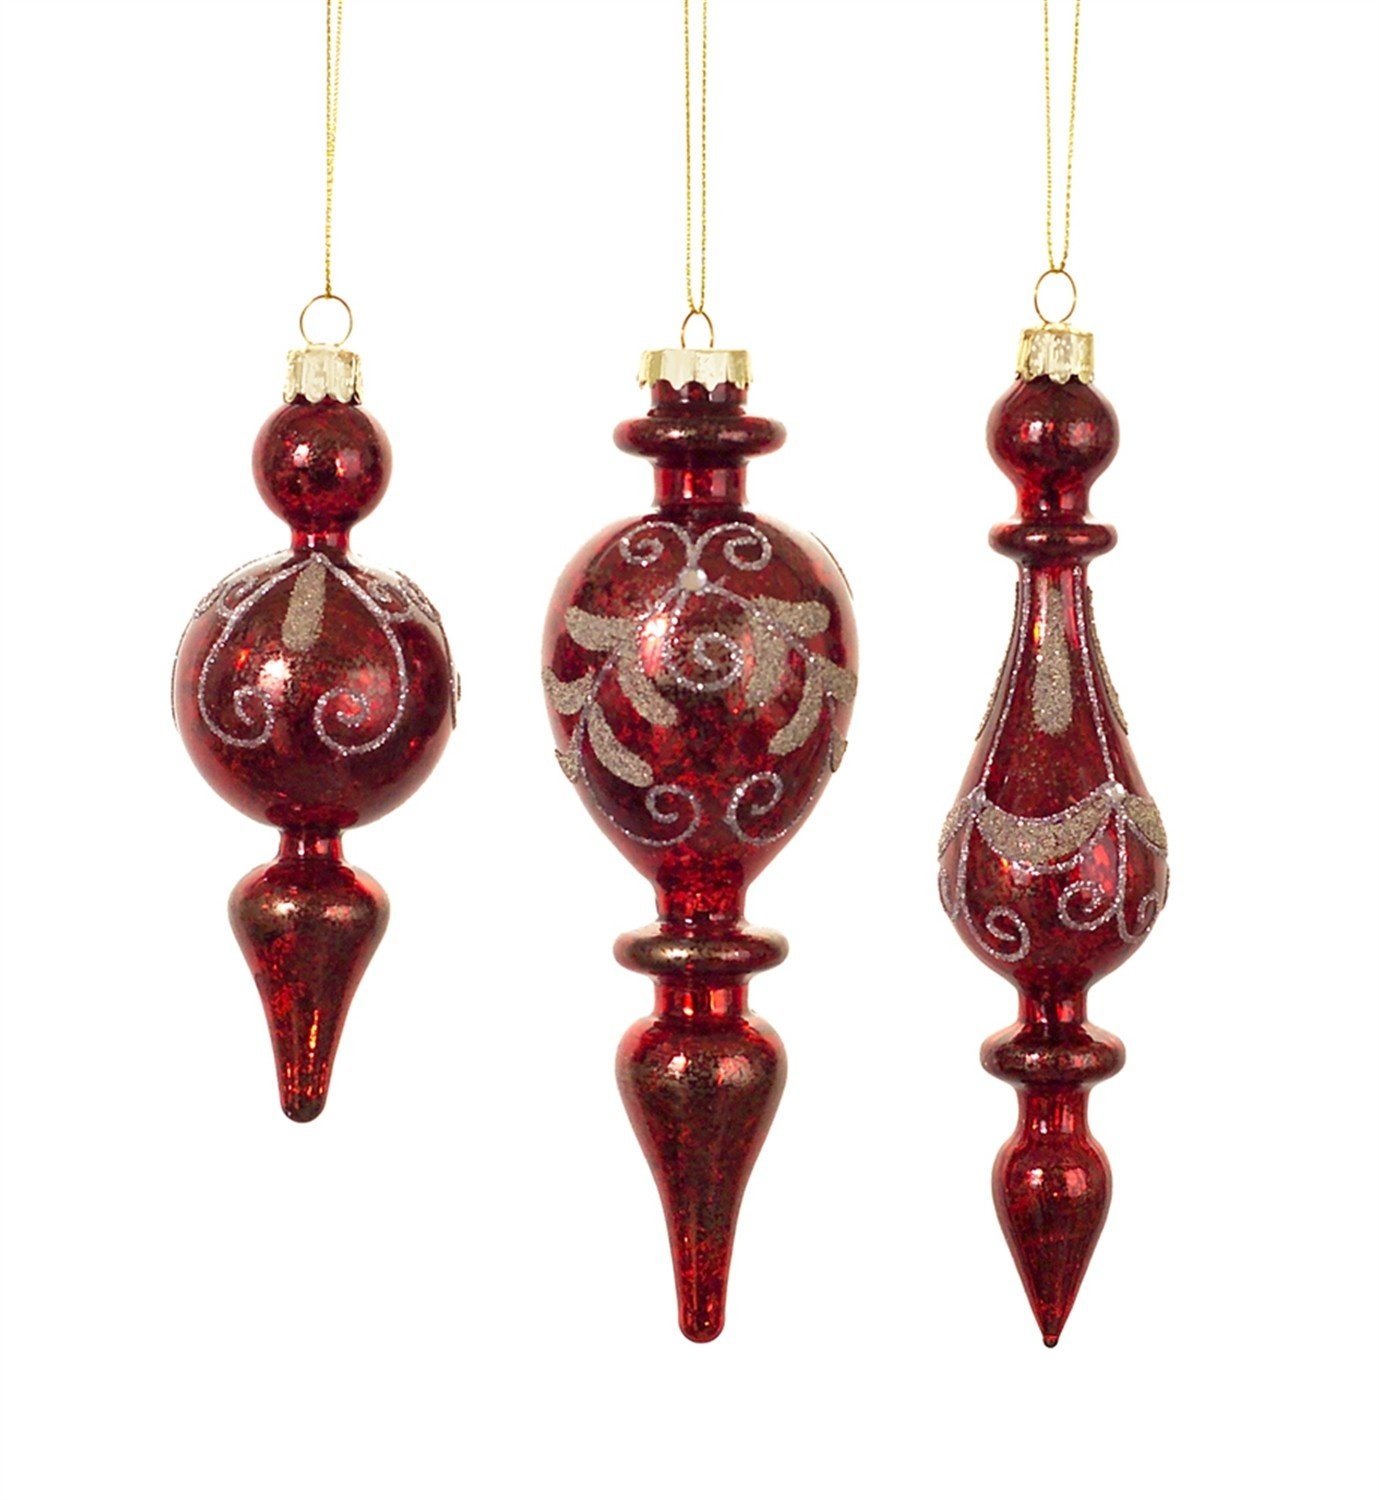 Decorative Finial Ornament - Treasured Accents